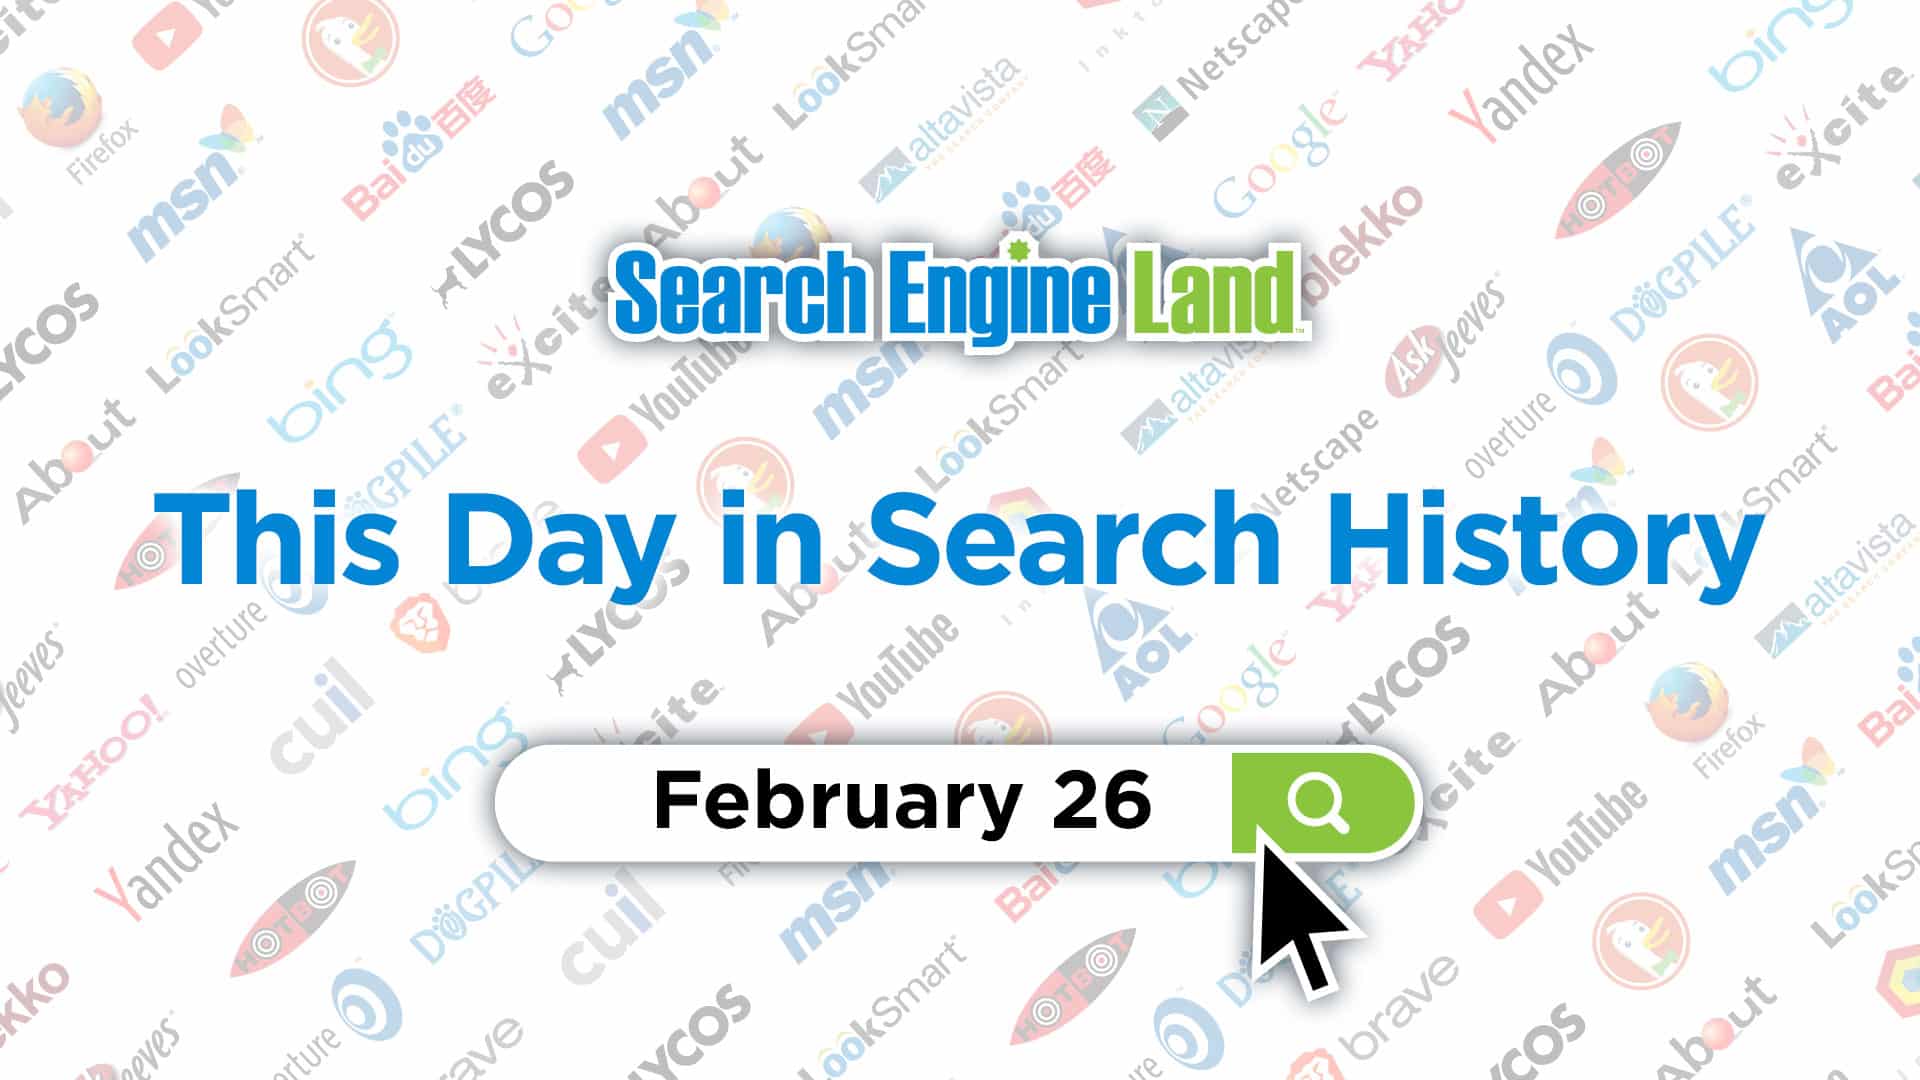 , این روز در تاریخچه بازاریابی جستجو: 26 فوریه, محتوا مارکتینگ